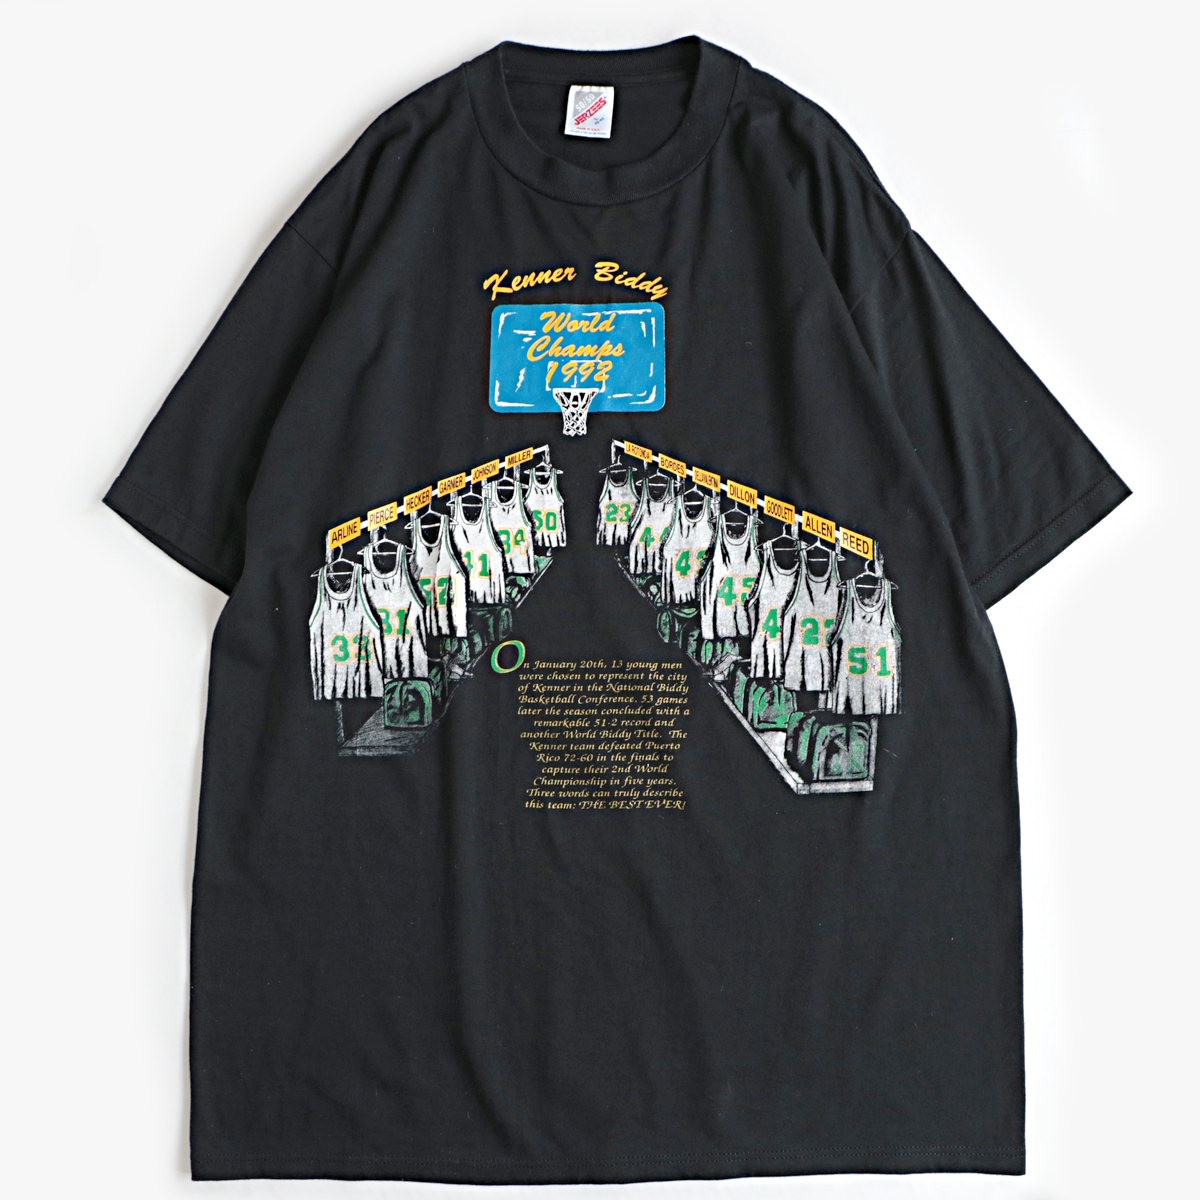 90s jerzees バスケ チーム ユニフォーム プリント 半袖 Tシャツ usa製